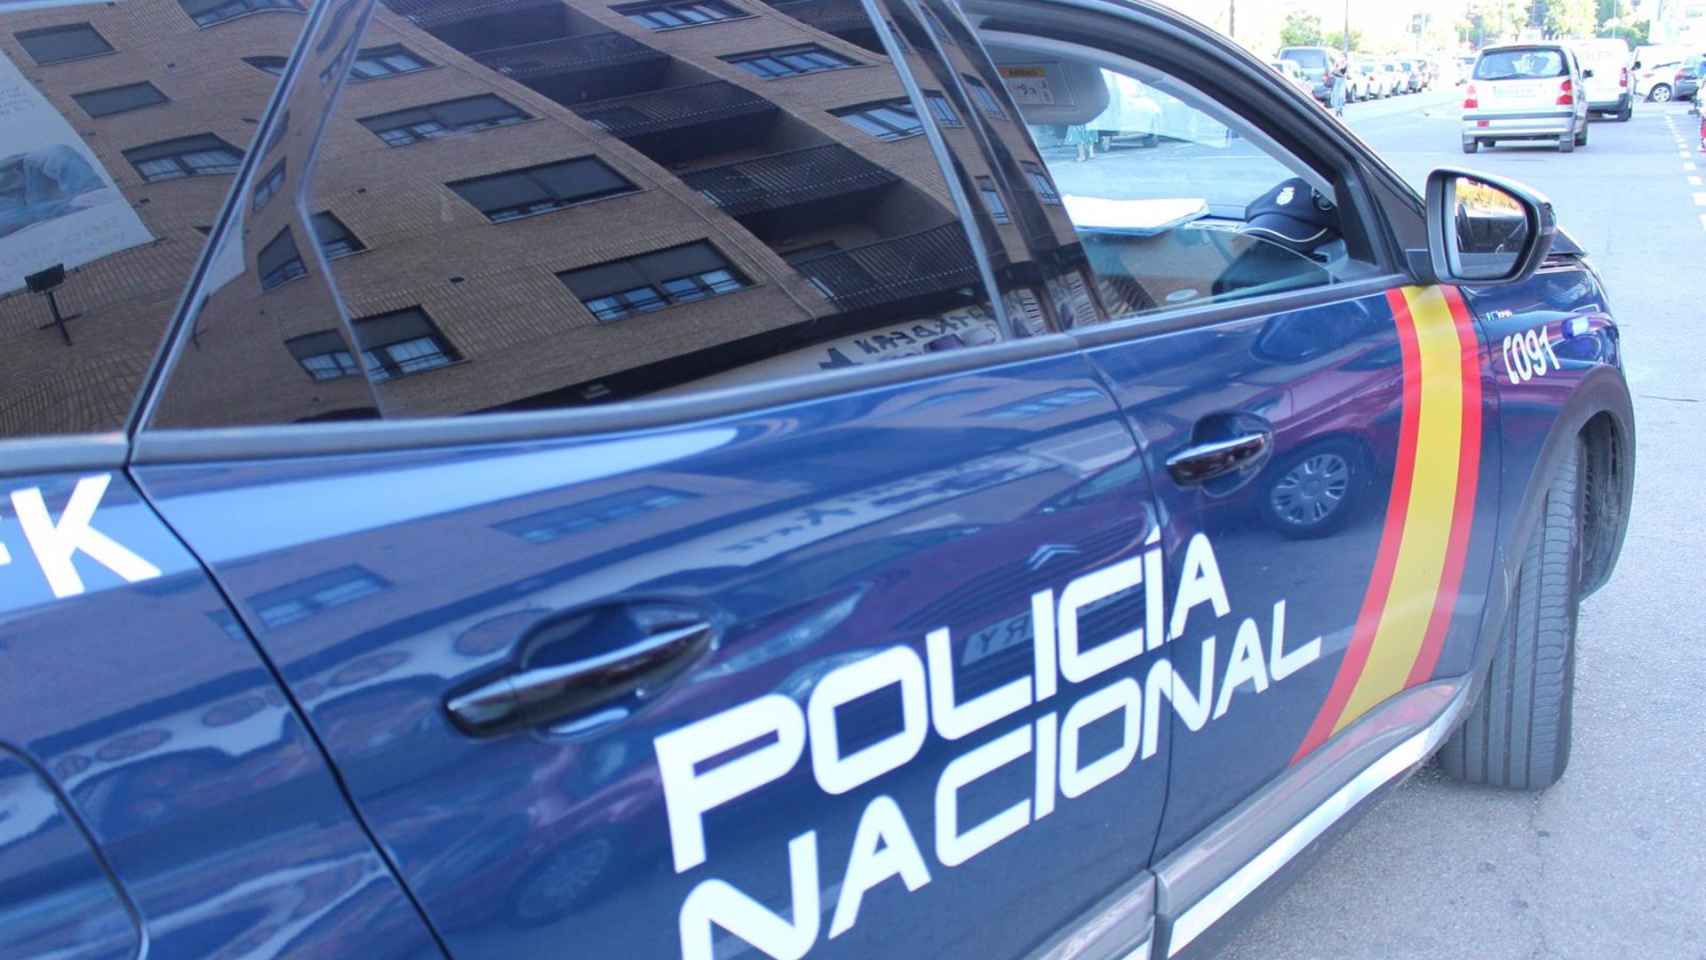 Vehículo de la Policía Nacional